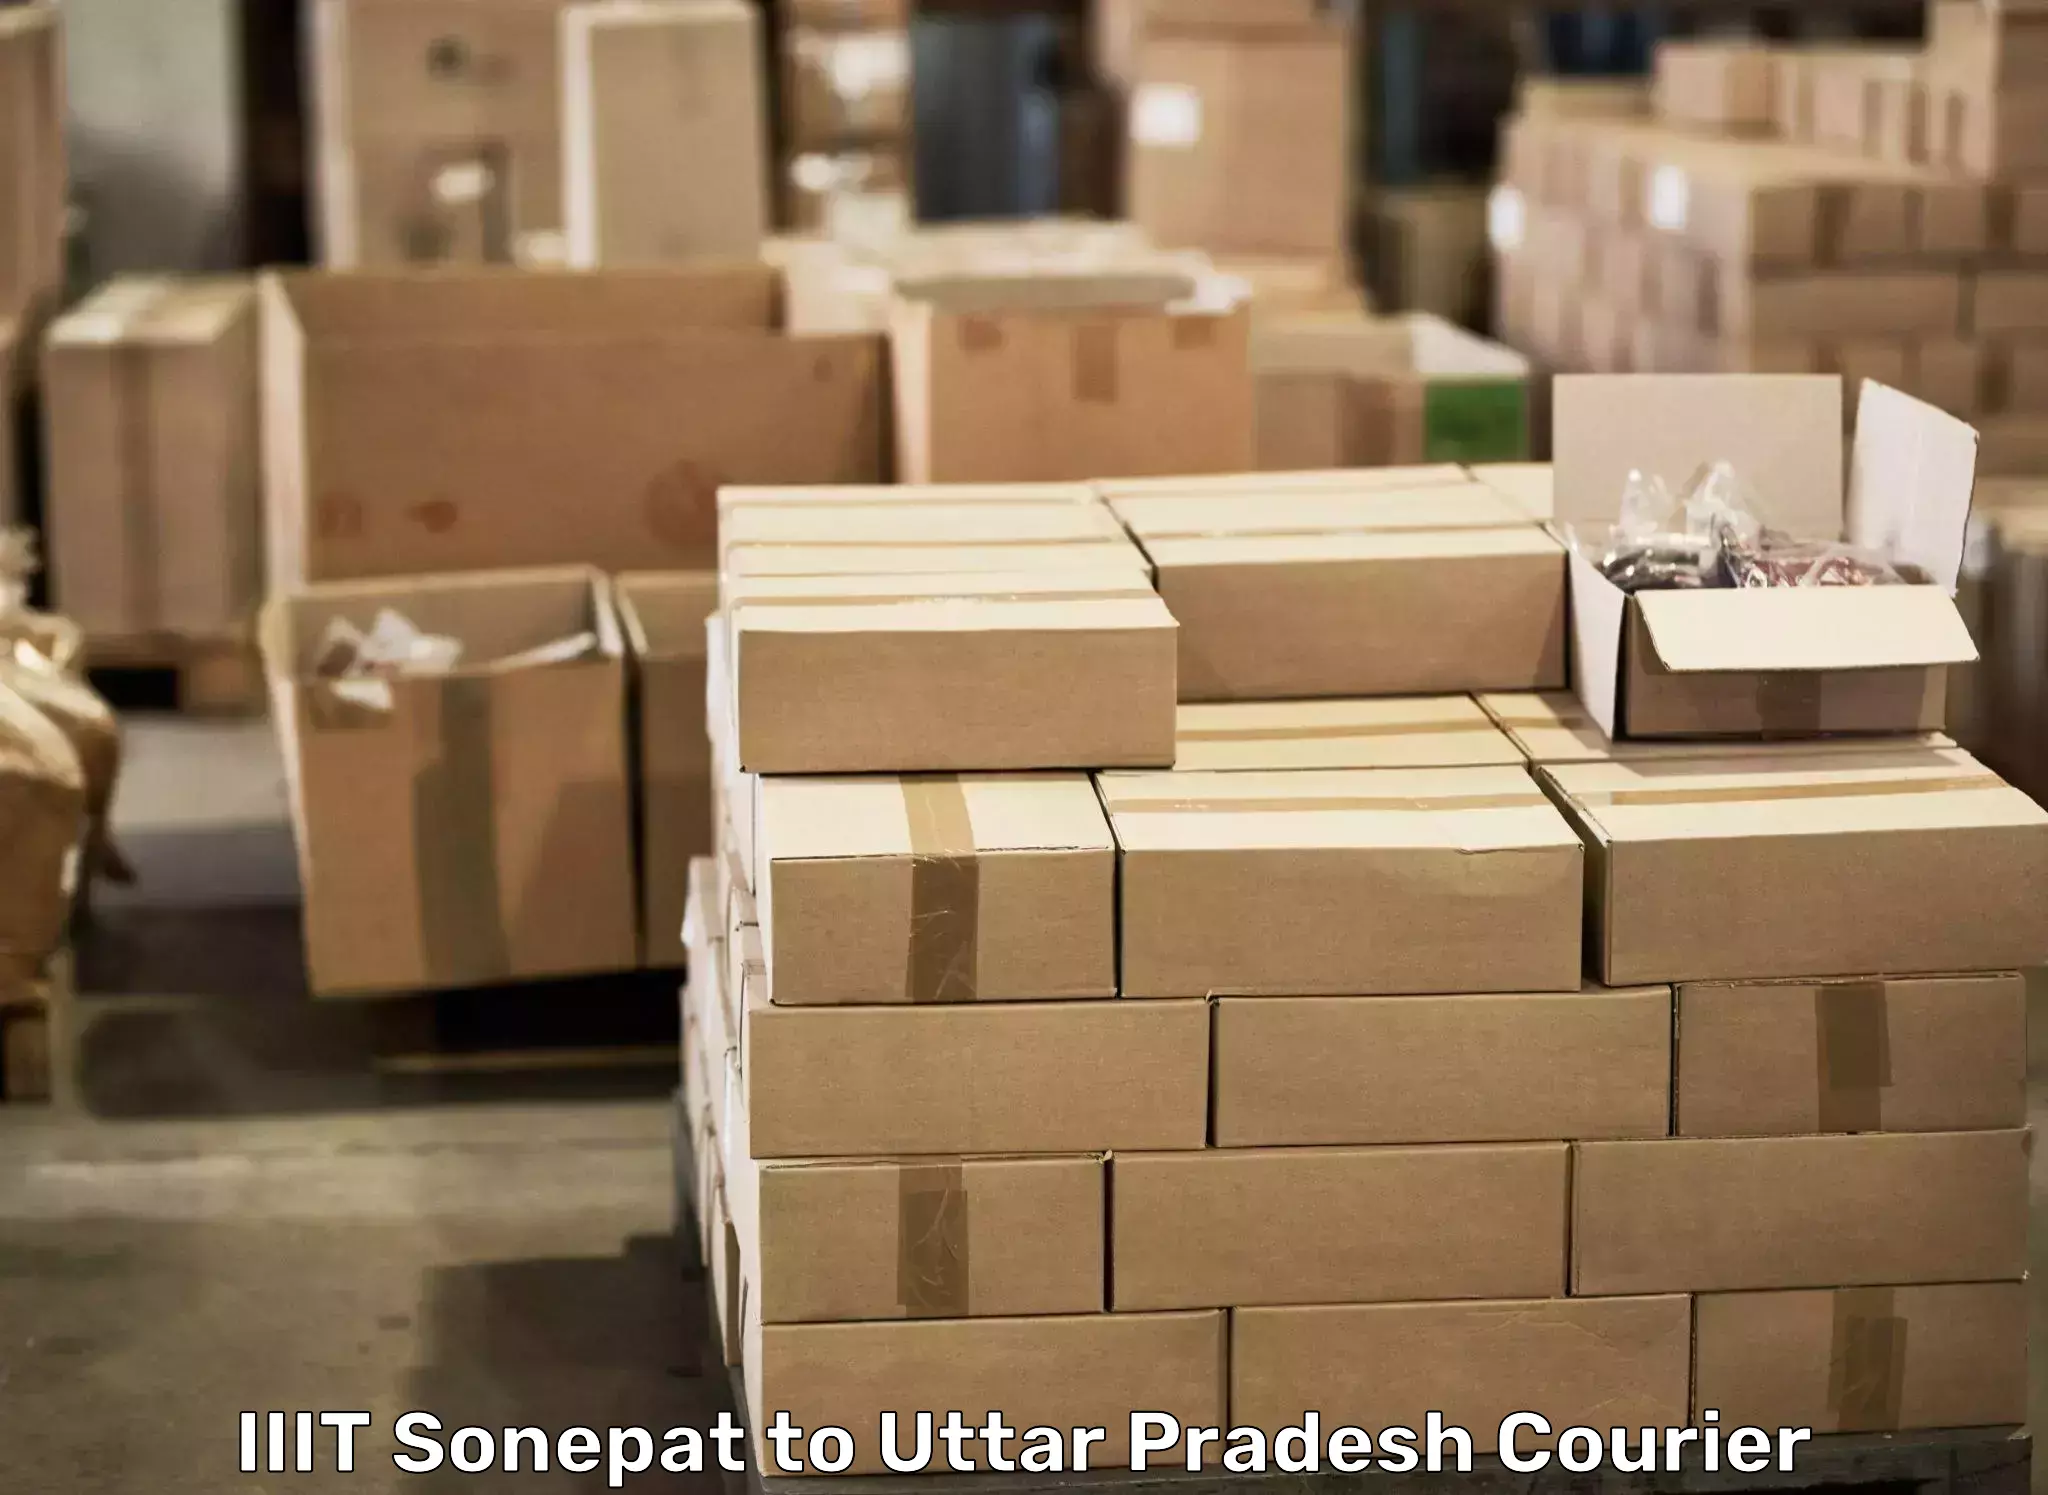 Cost-effective moving options IIIT Sonepat to Gopiganj